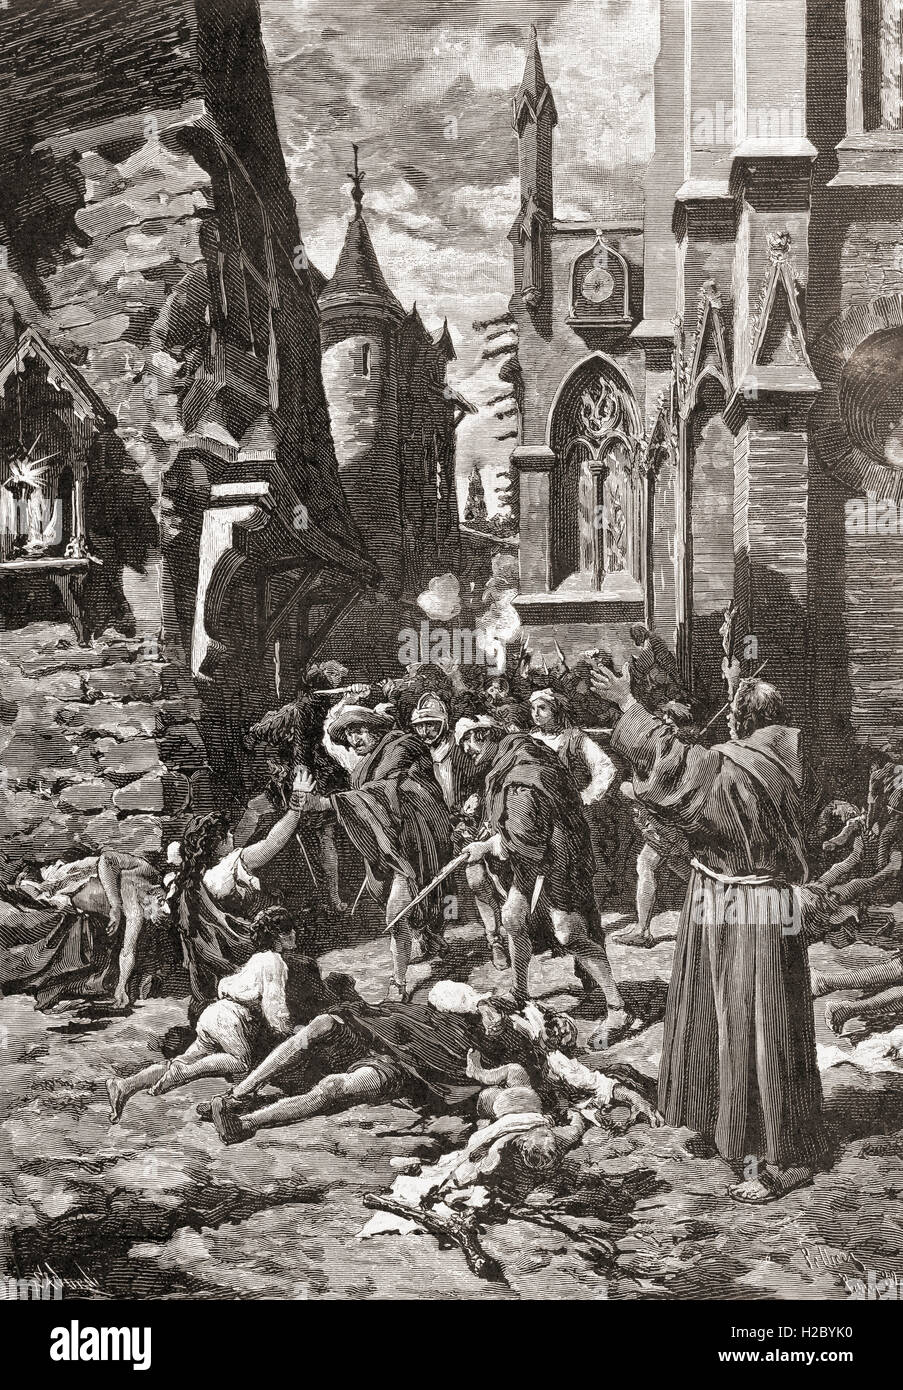 La Masacre del Día de San Bartolomé en París, Francia, en 1572, un grupo de asesinatos y una ola de violencia callejera católica, dirigida contra los hugonotes (protestantes), calvinista francés durante las guerras francesas de la religión. Foto de stock